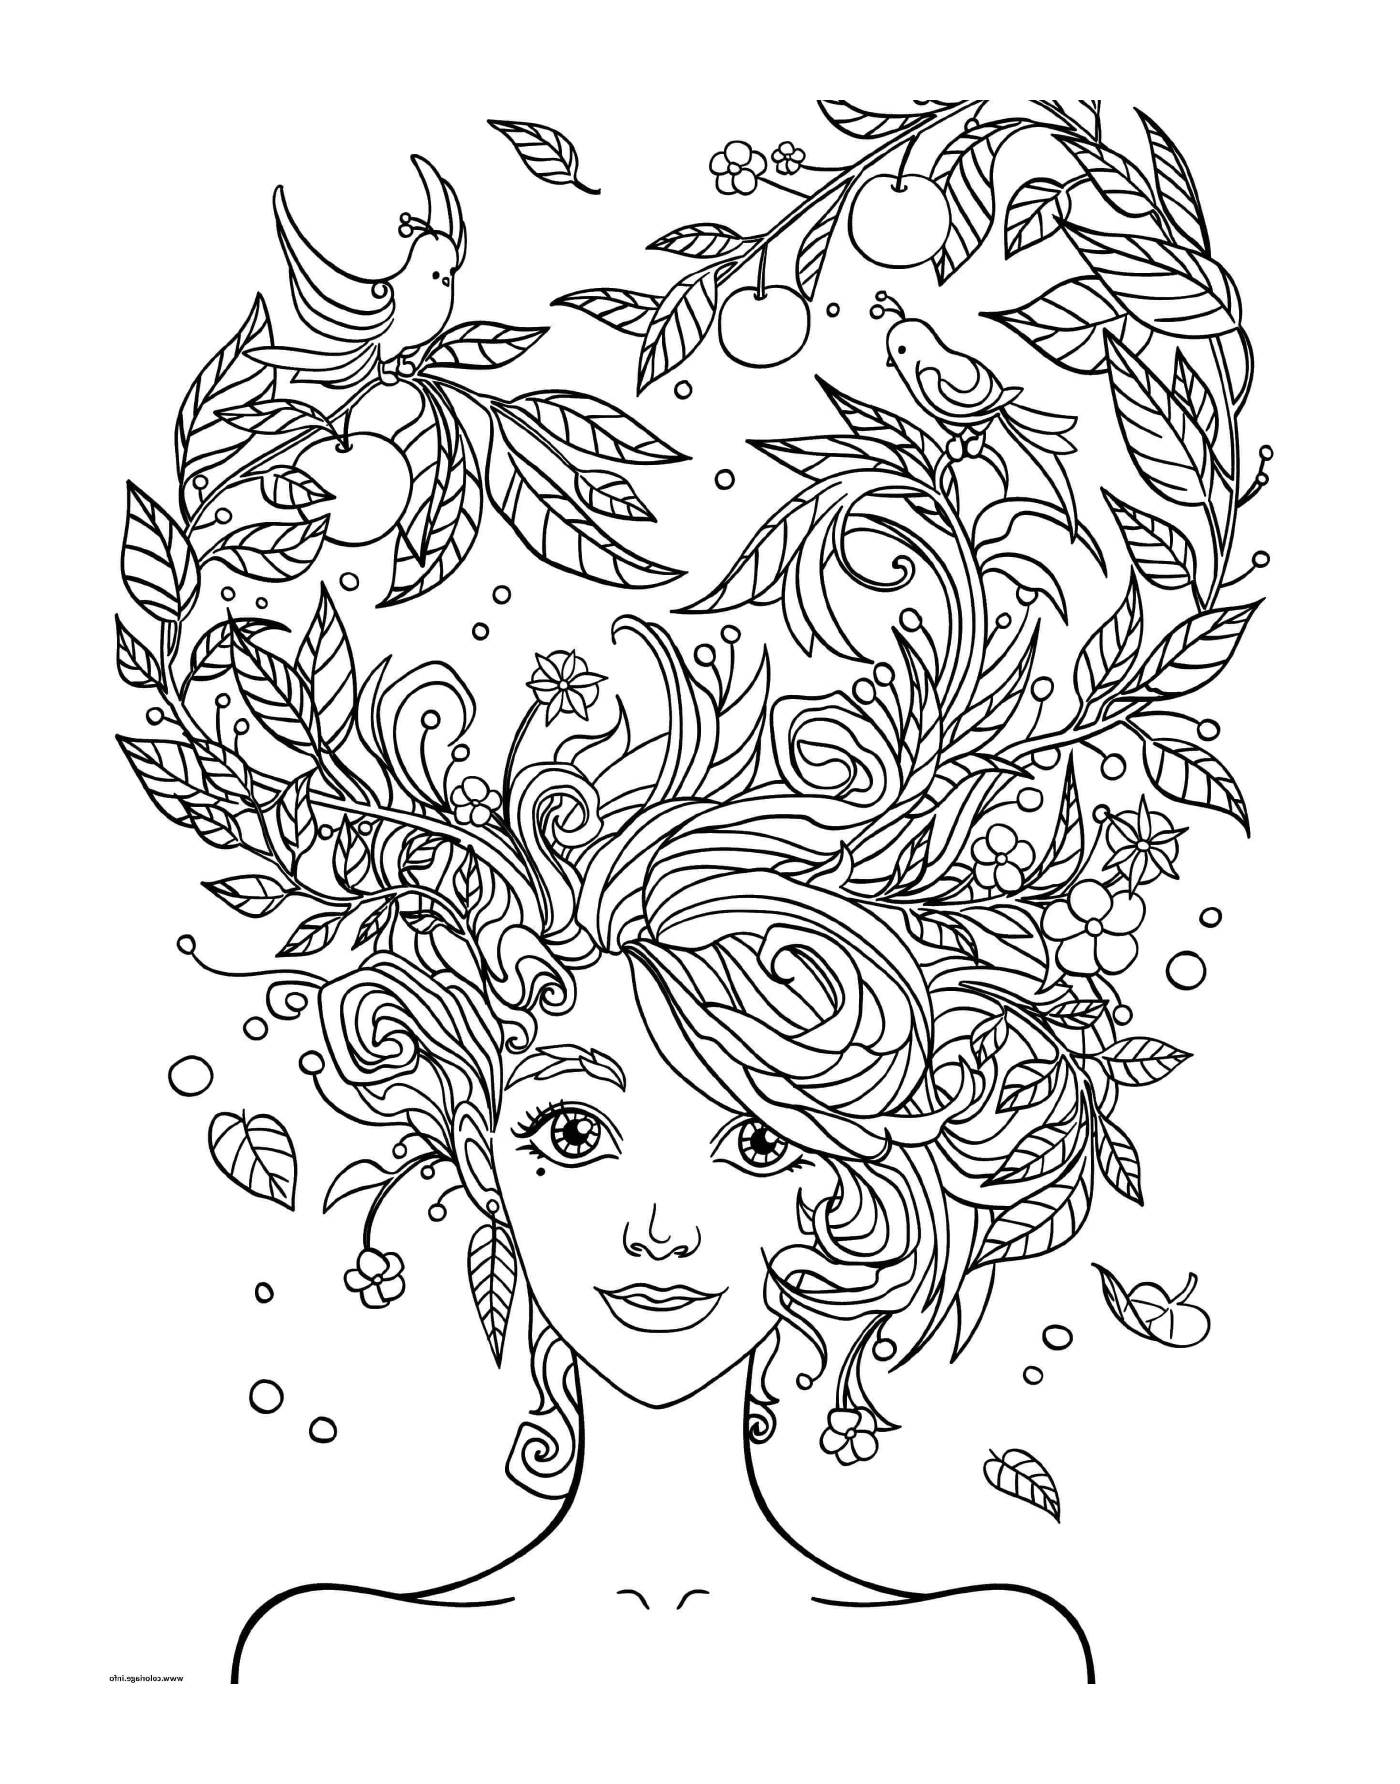  Cabeça de mulher adulta com flores no cabelo 